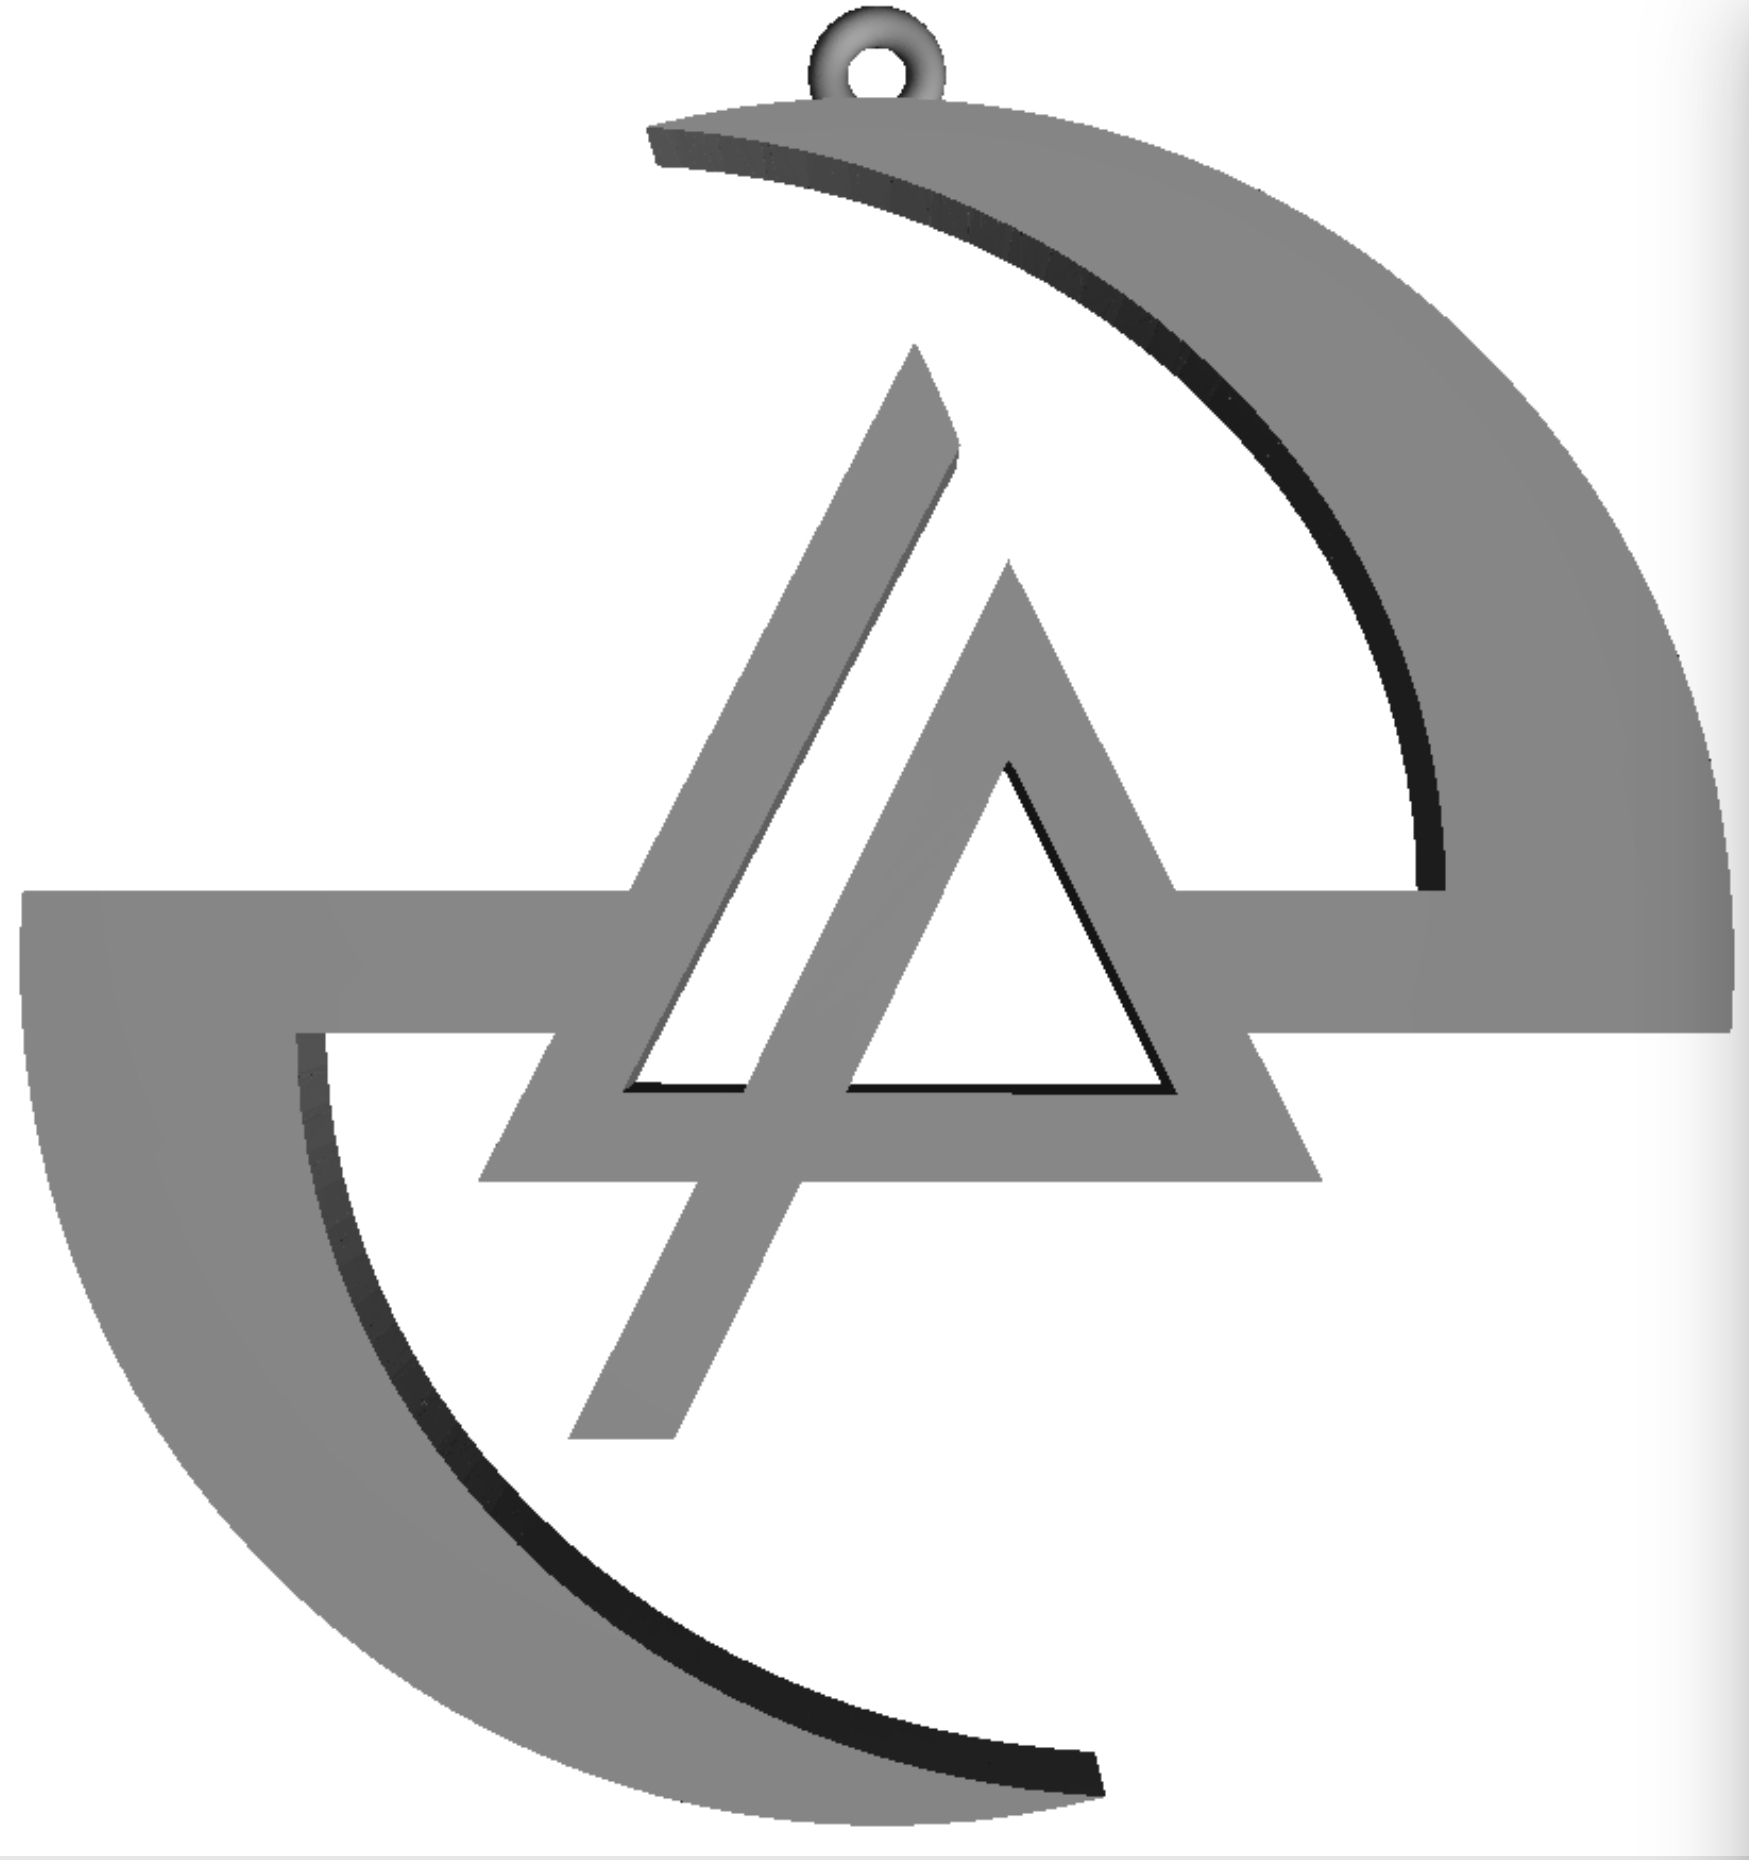 Evanescence/Linkin Park logo